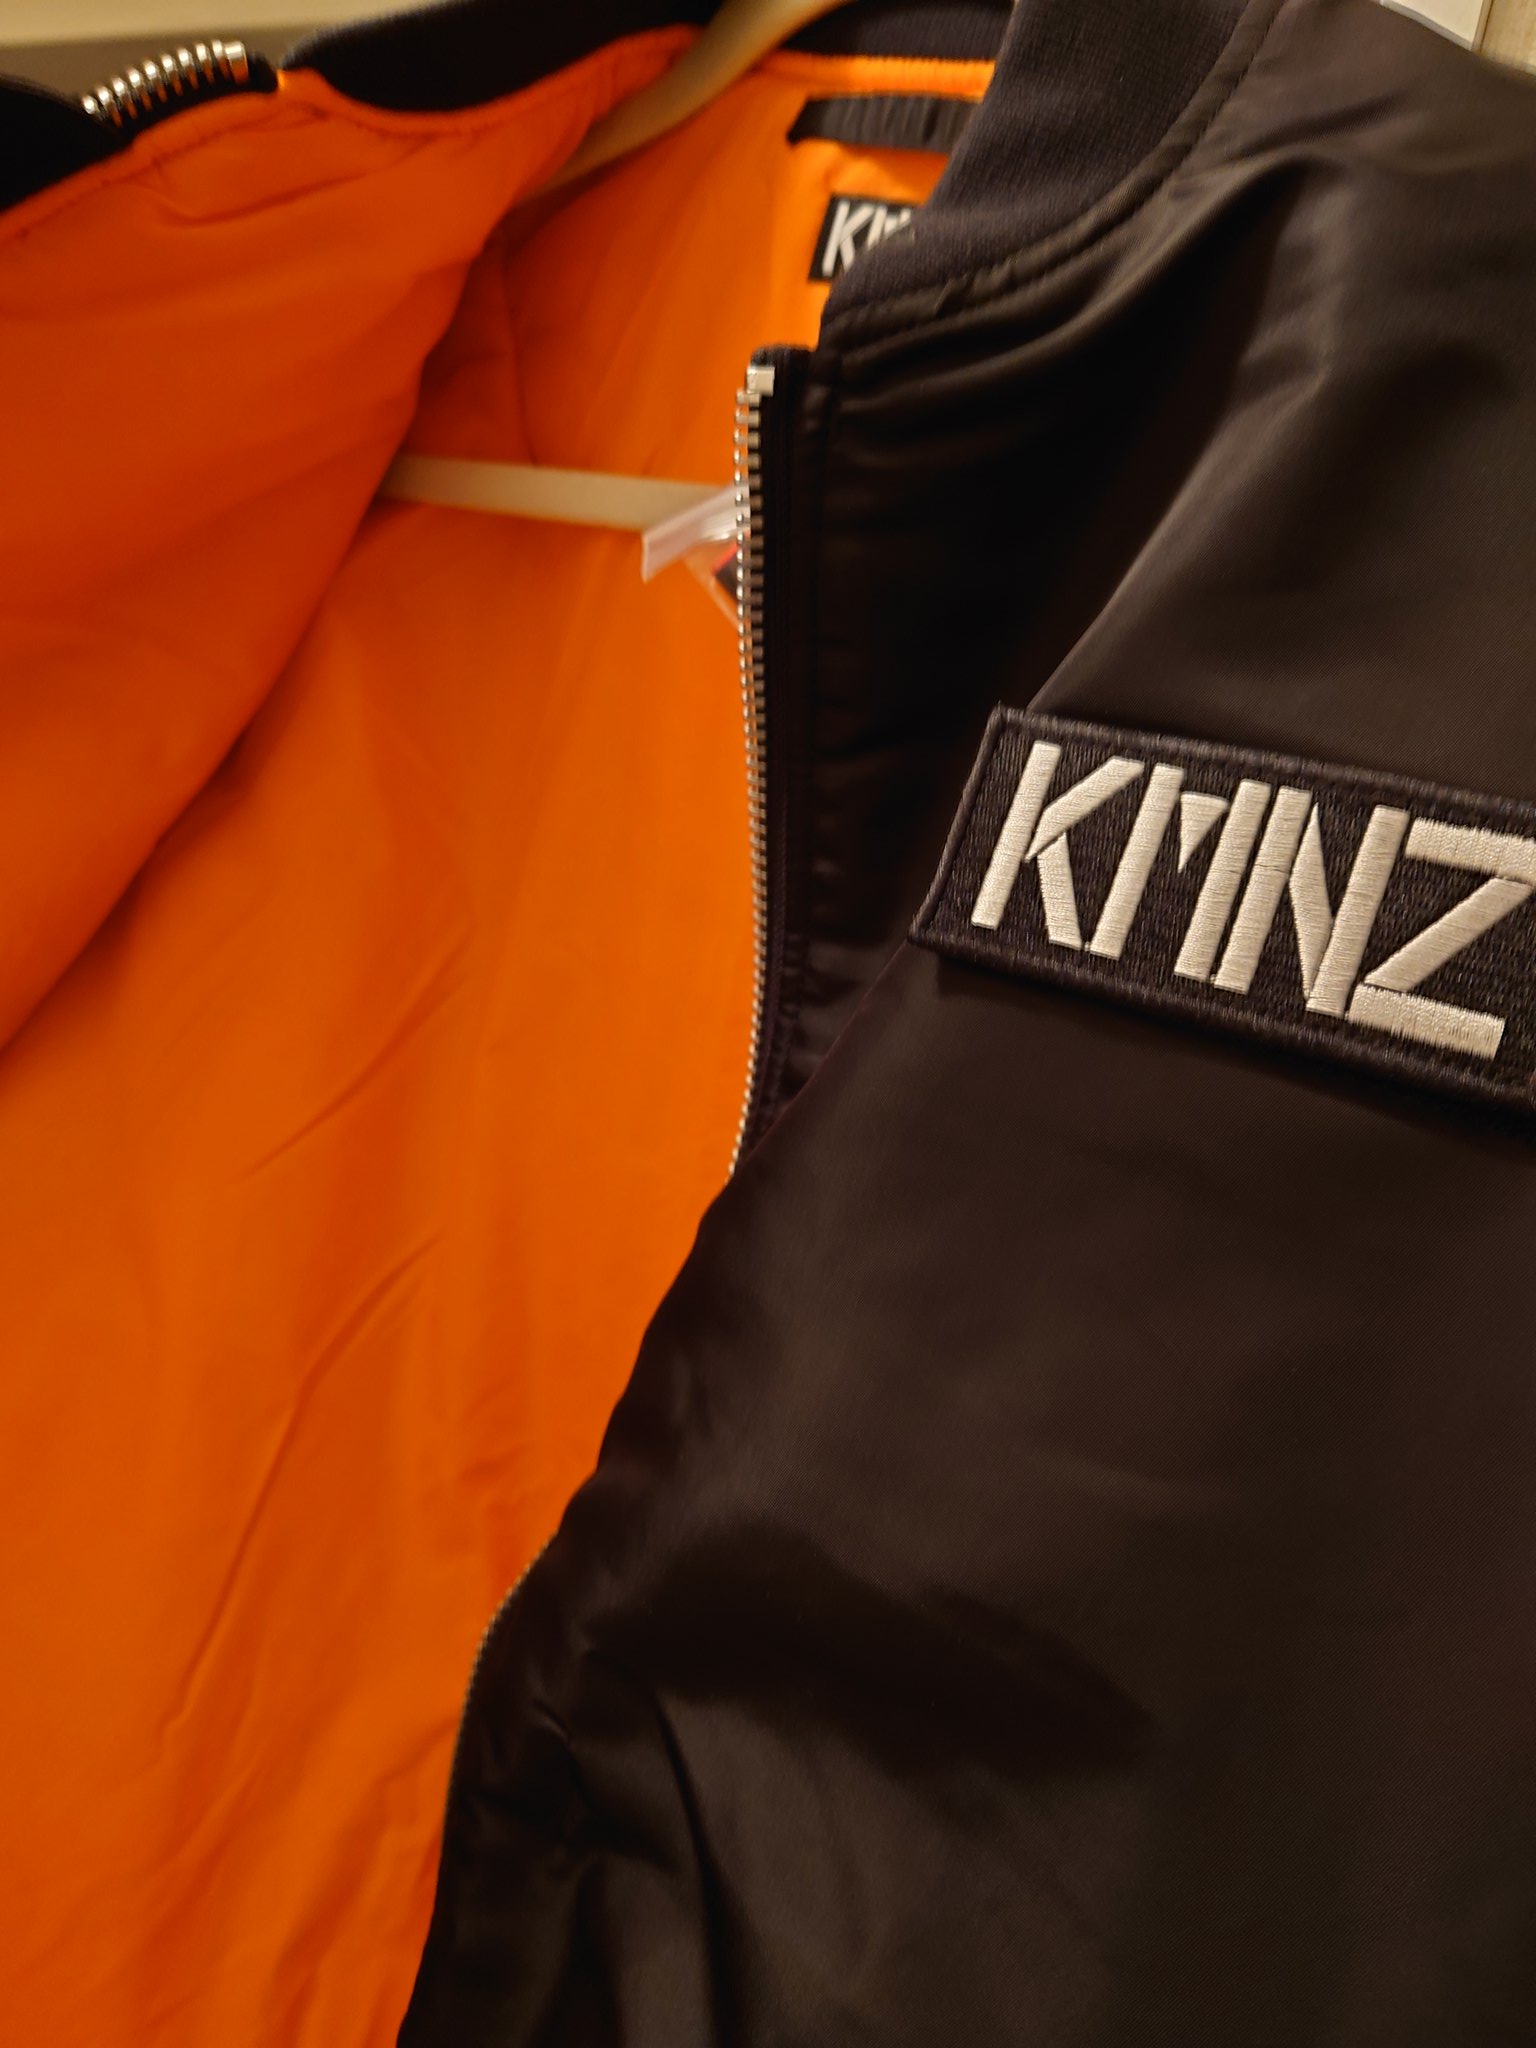 【KMNZ】特注ボンバージャケット：クラウドファンディング支援者限定品